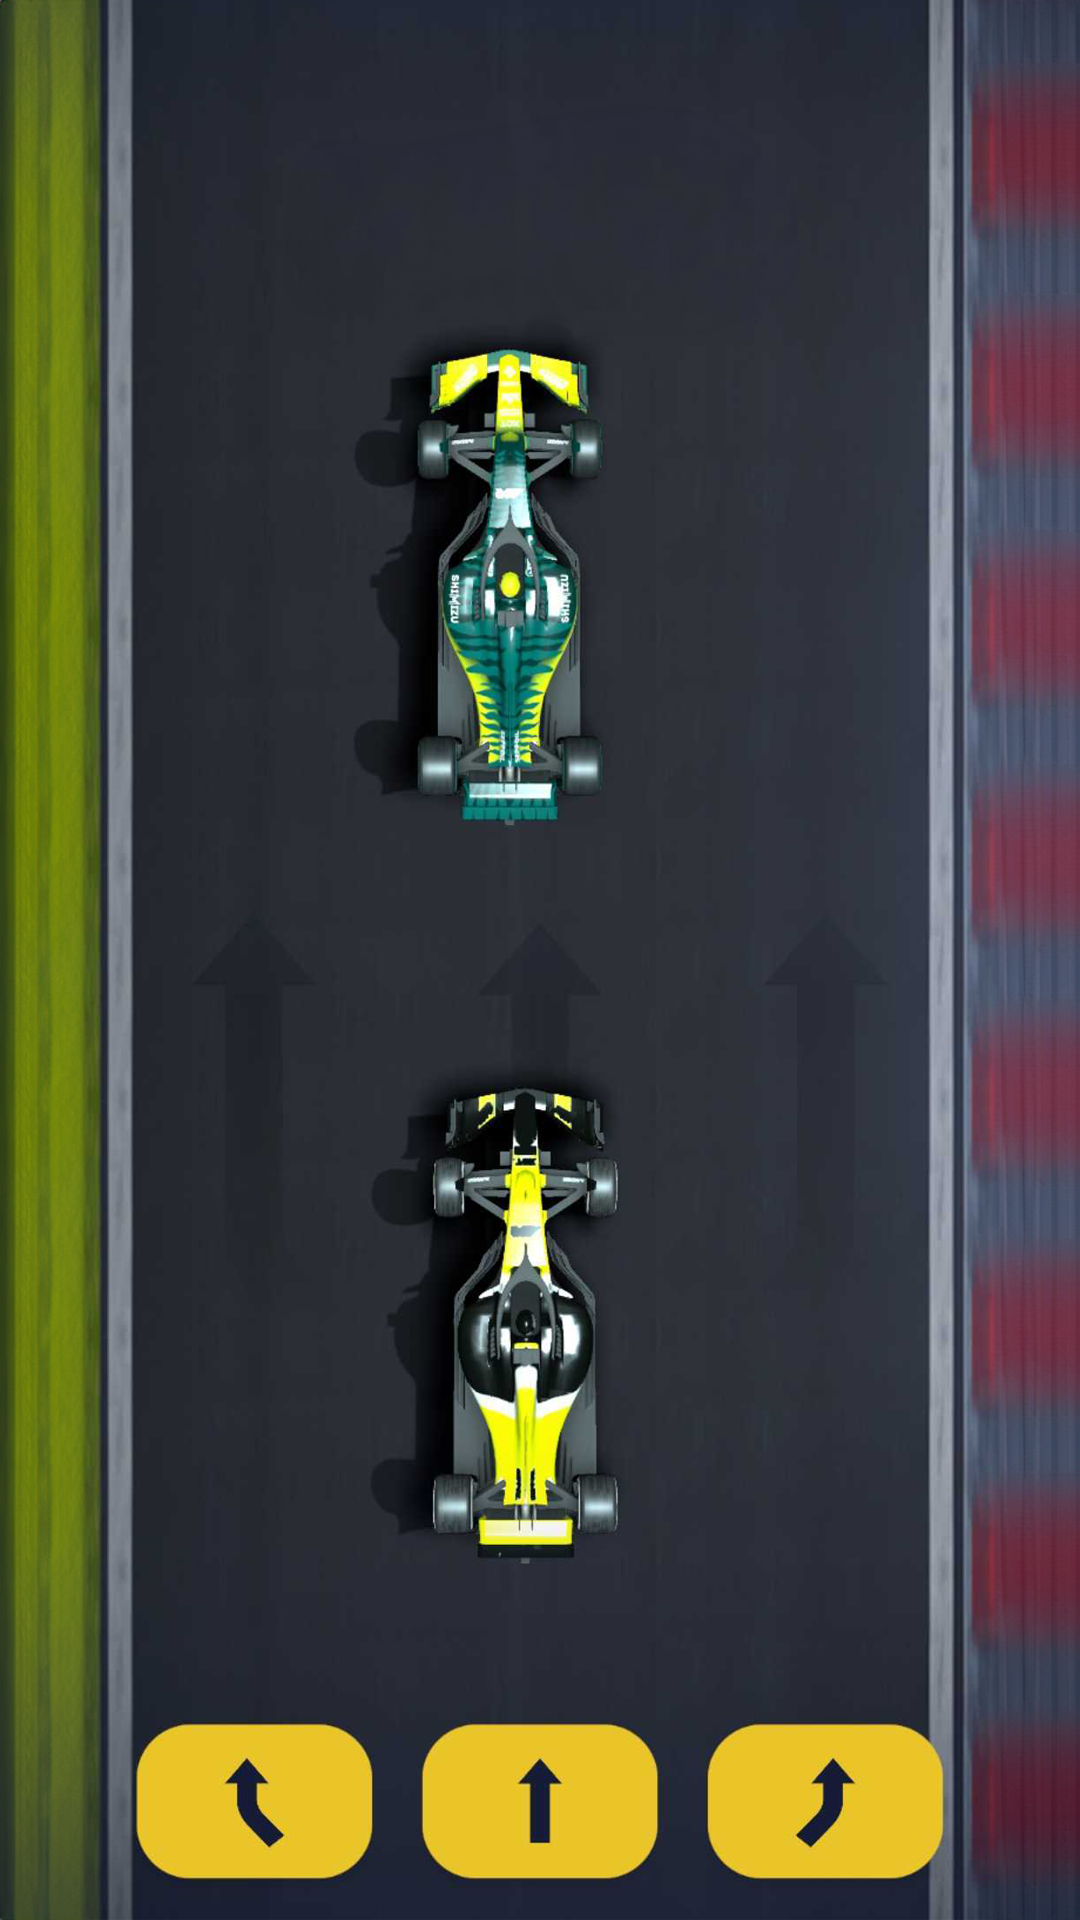 Screenshot of Racing Rivals: Stock Car Game